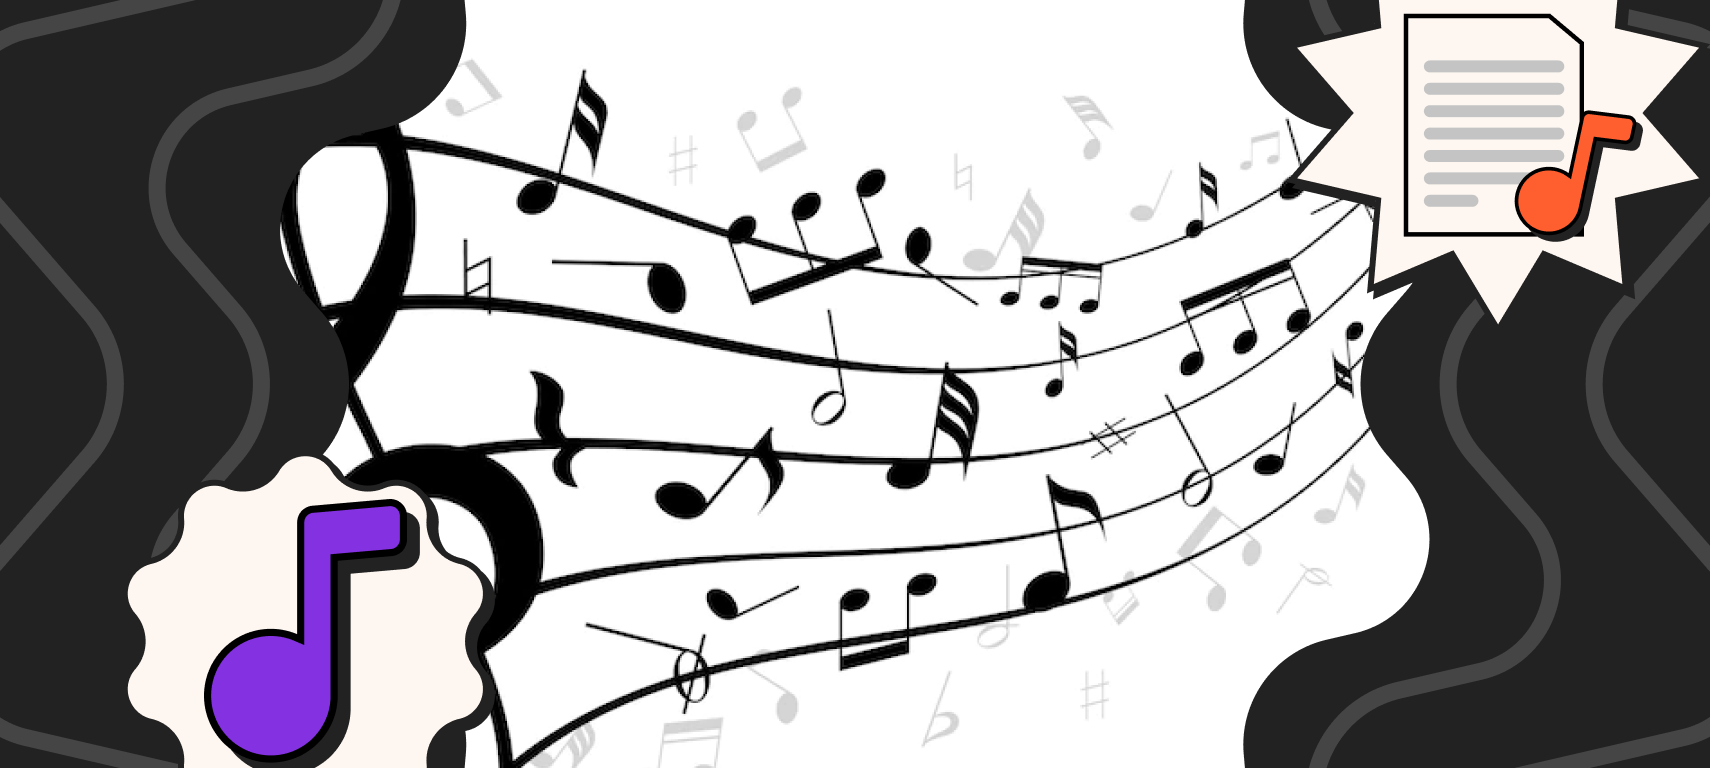 REGISTRO MUSICAL I notação musical e partitura não convencional 